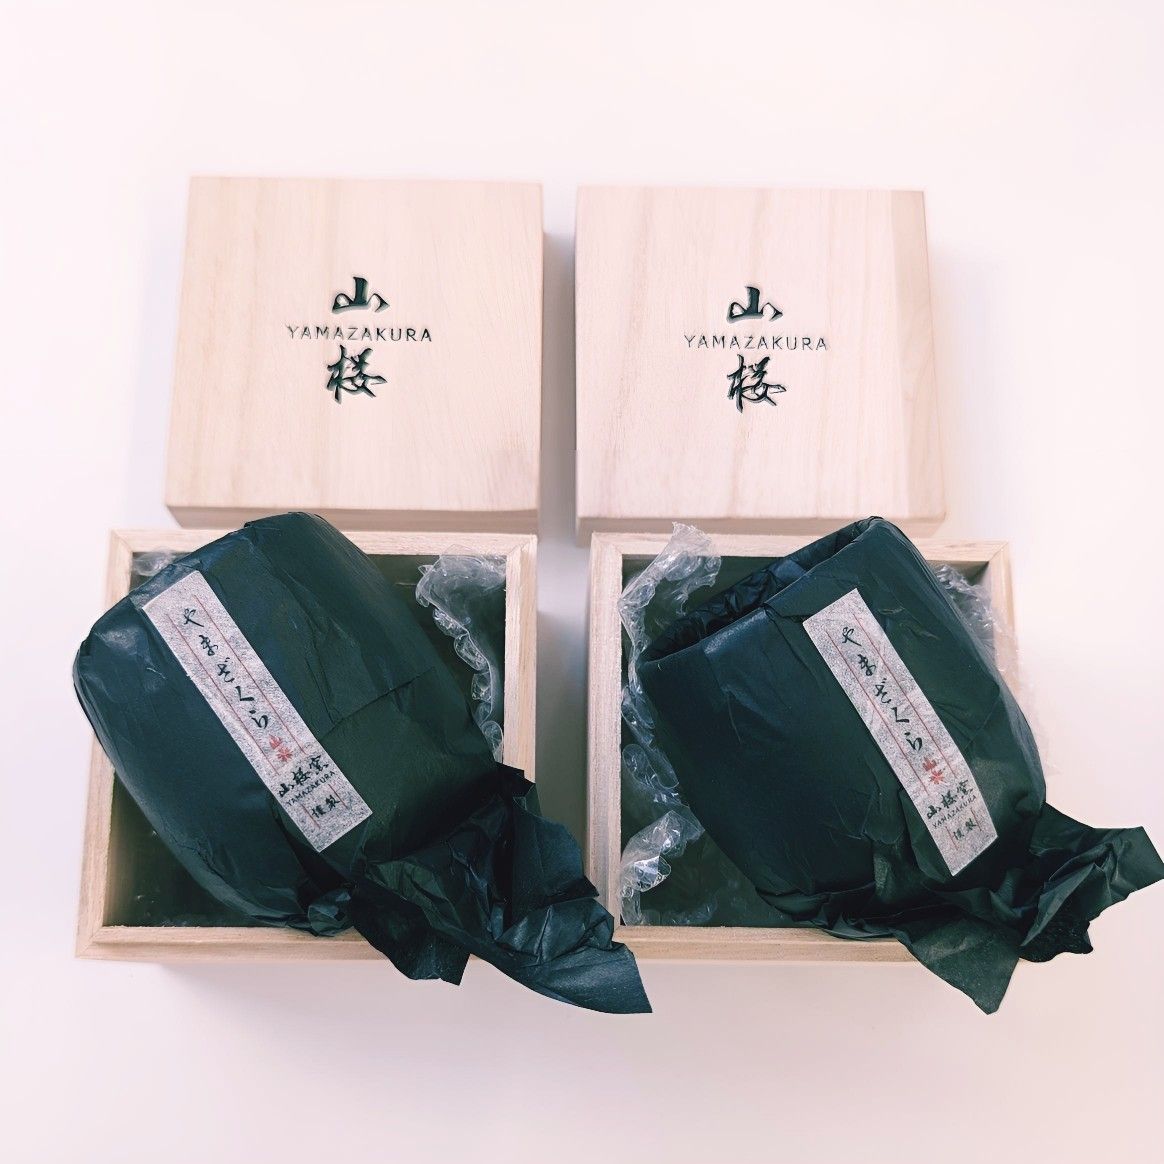 ■新品 桜色 湯呑み茶碗 ペア セット 高級 山桜窯謹製 YAMAZAKURA   専用木箱付 お祝い プレゼント 贈答